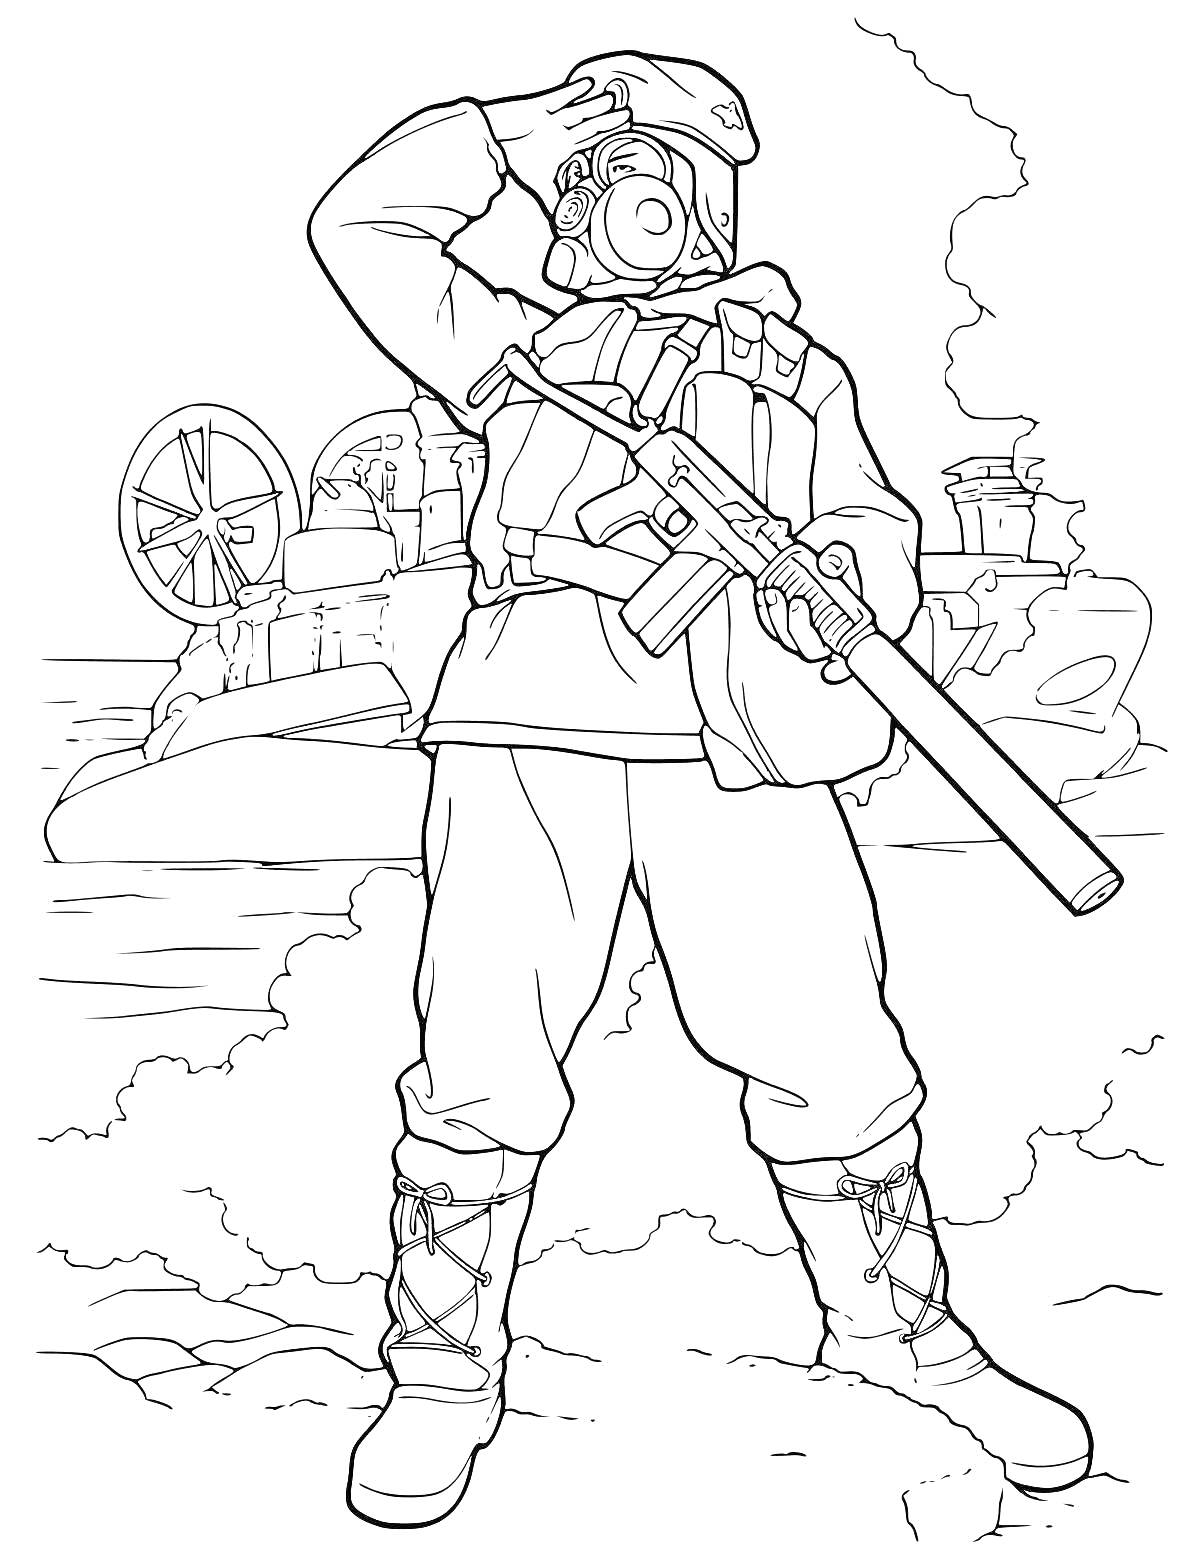 Раскраска Солдат на фоне военной техники и дымящихся руин, с оружием в руках и в каске